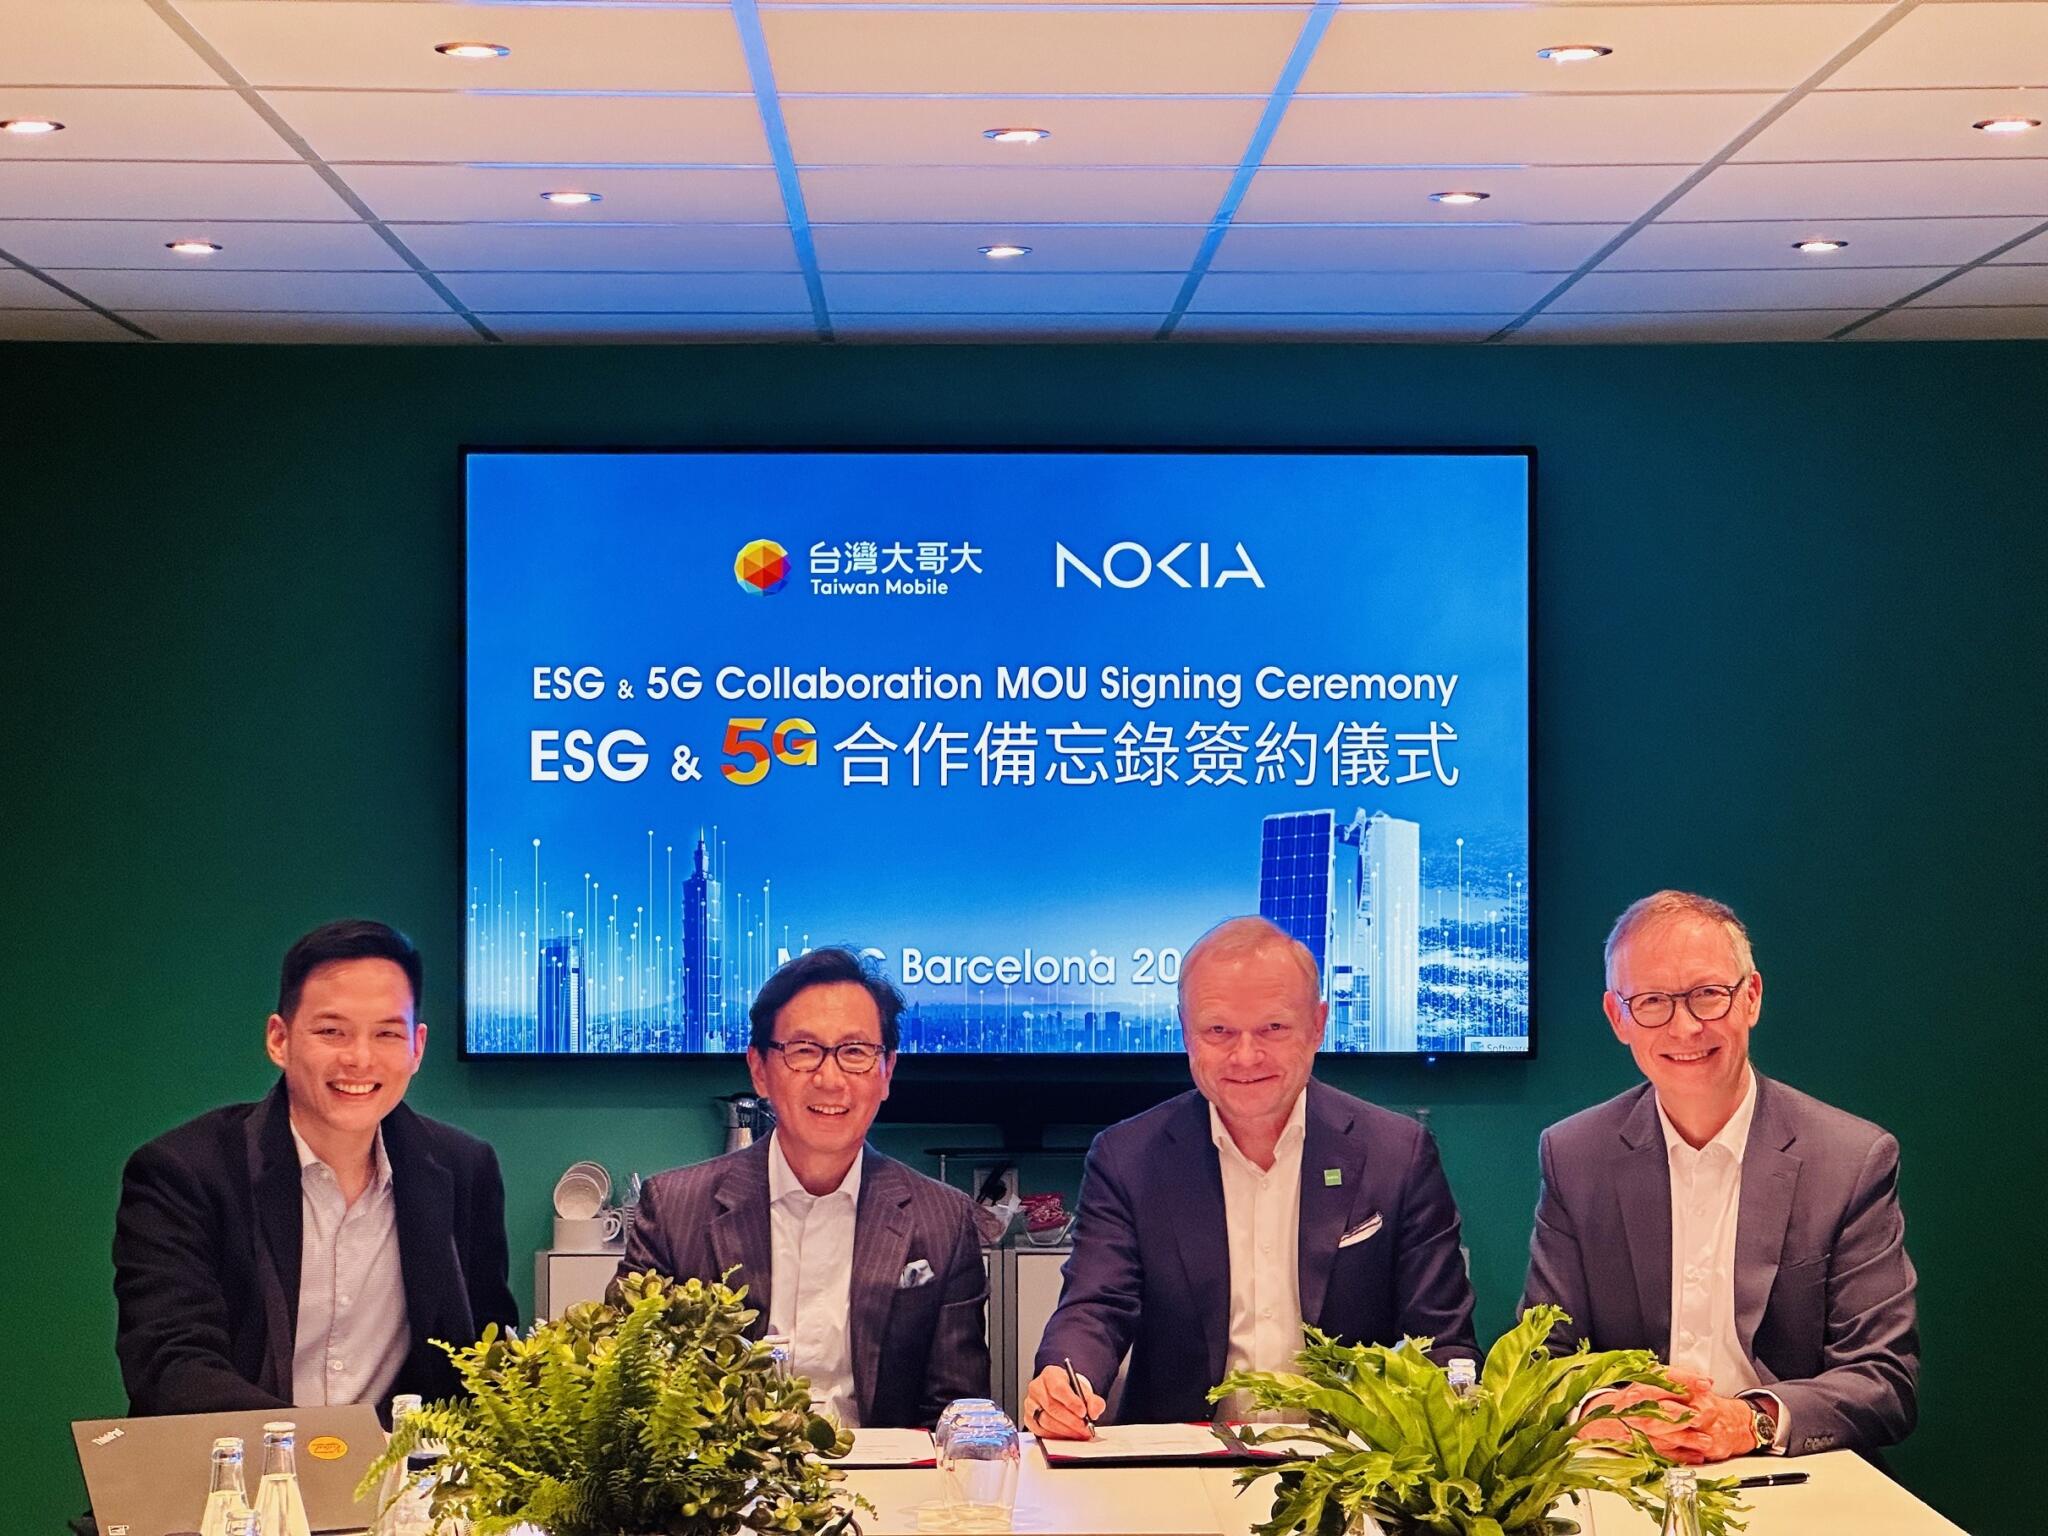 台灣大攜手諾基亞  簽署《ESG & 5G合作備忘錄》節能、網路再升級